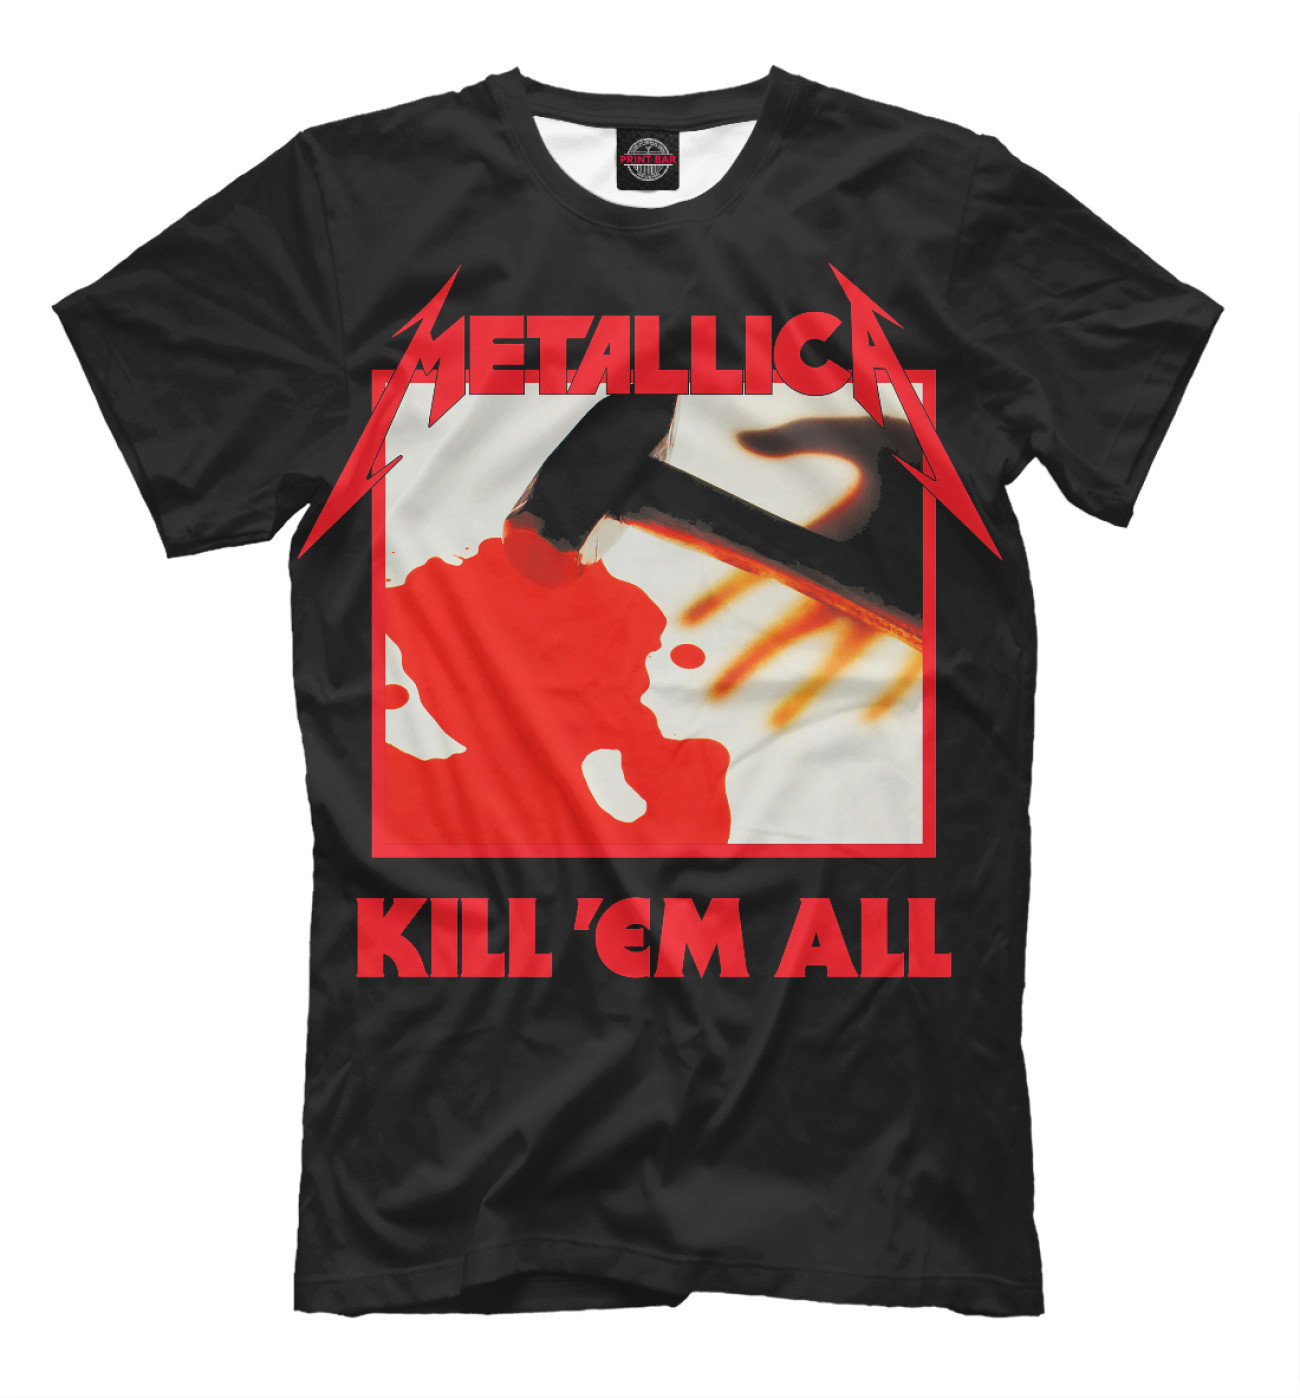 Мужская Футболка Metallica Kill ’Em All, артикул: MET-418679-fut-2